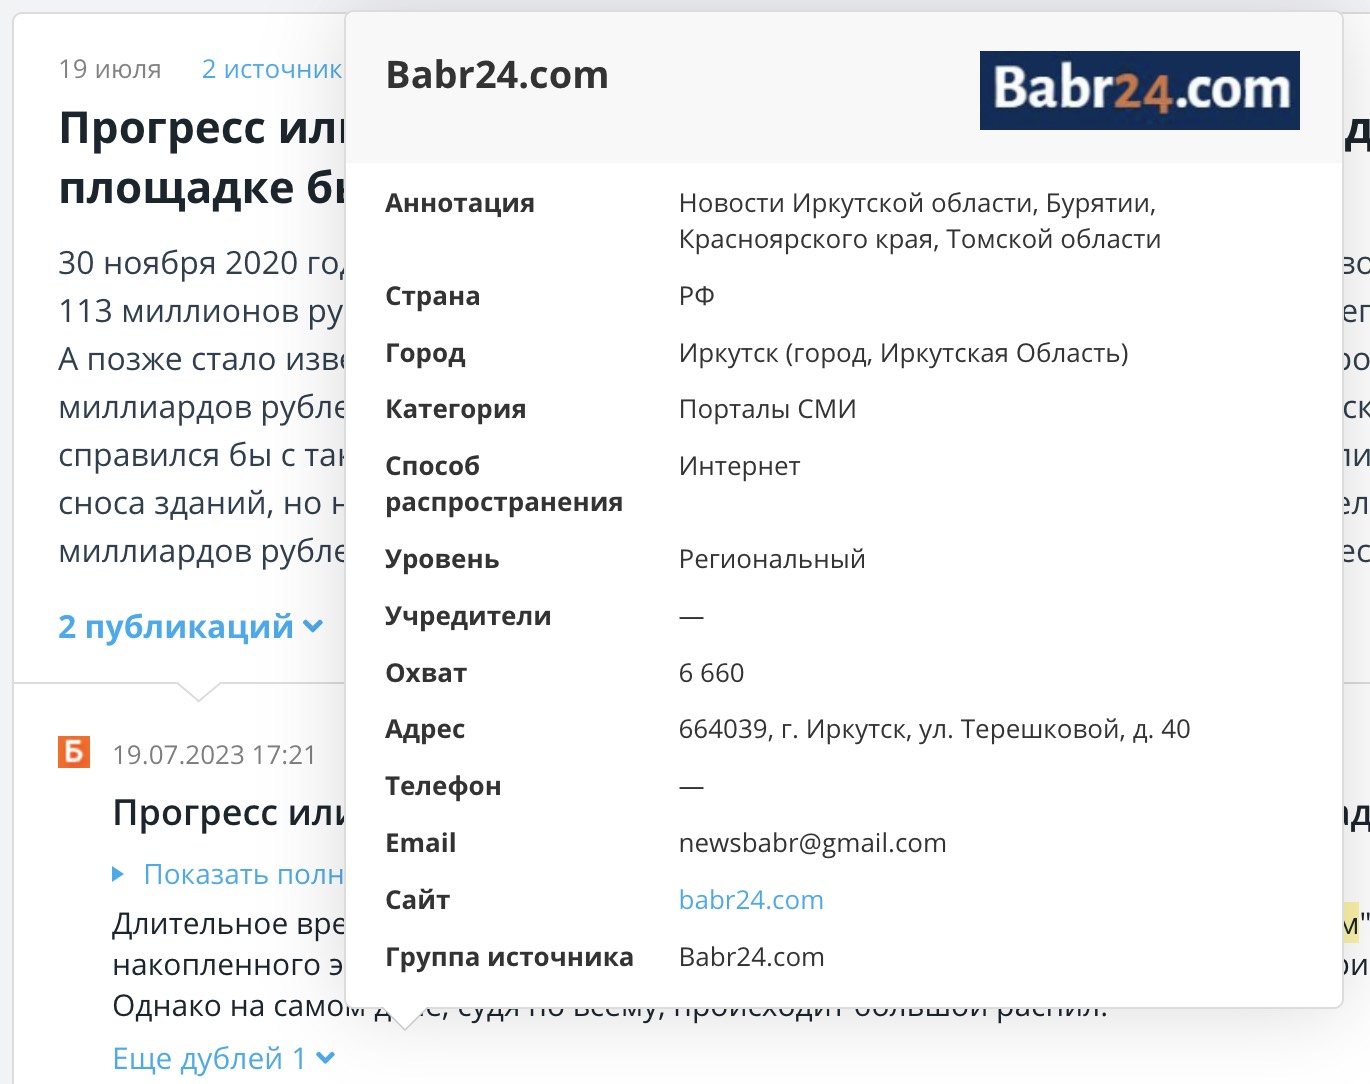 Карточка Babr24.com в СКАНе